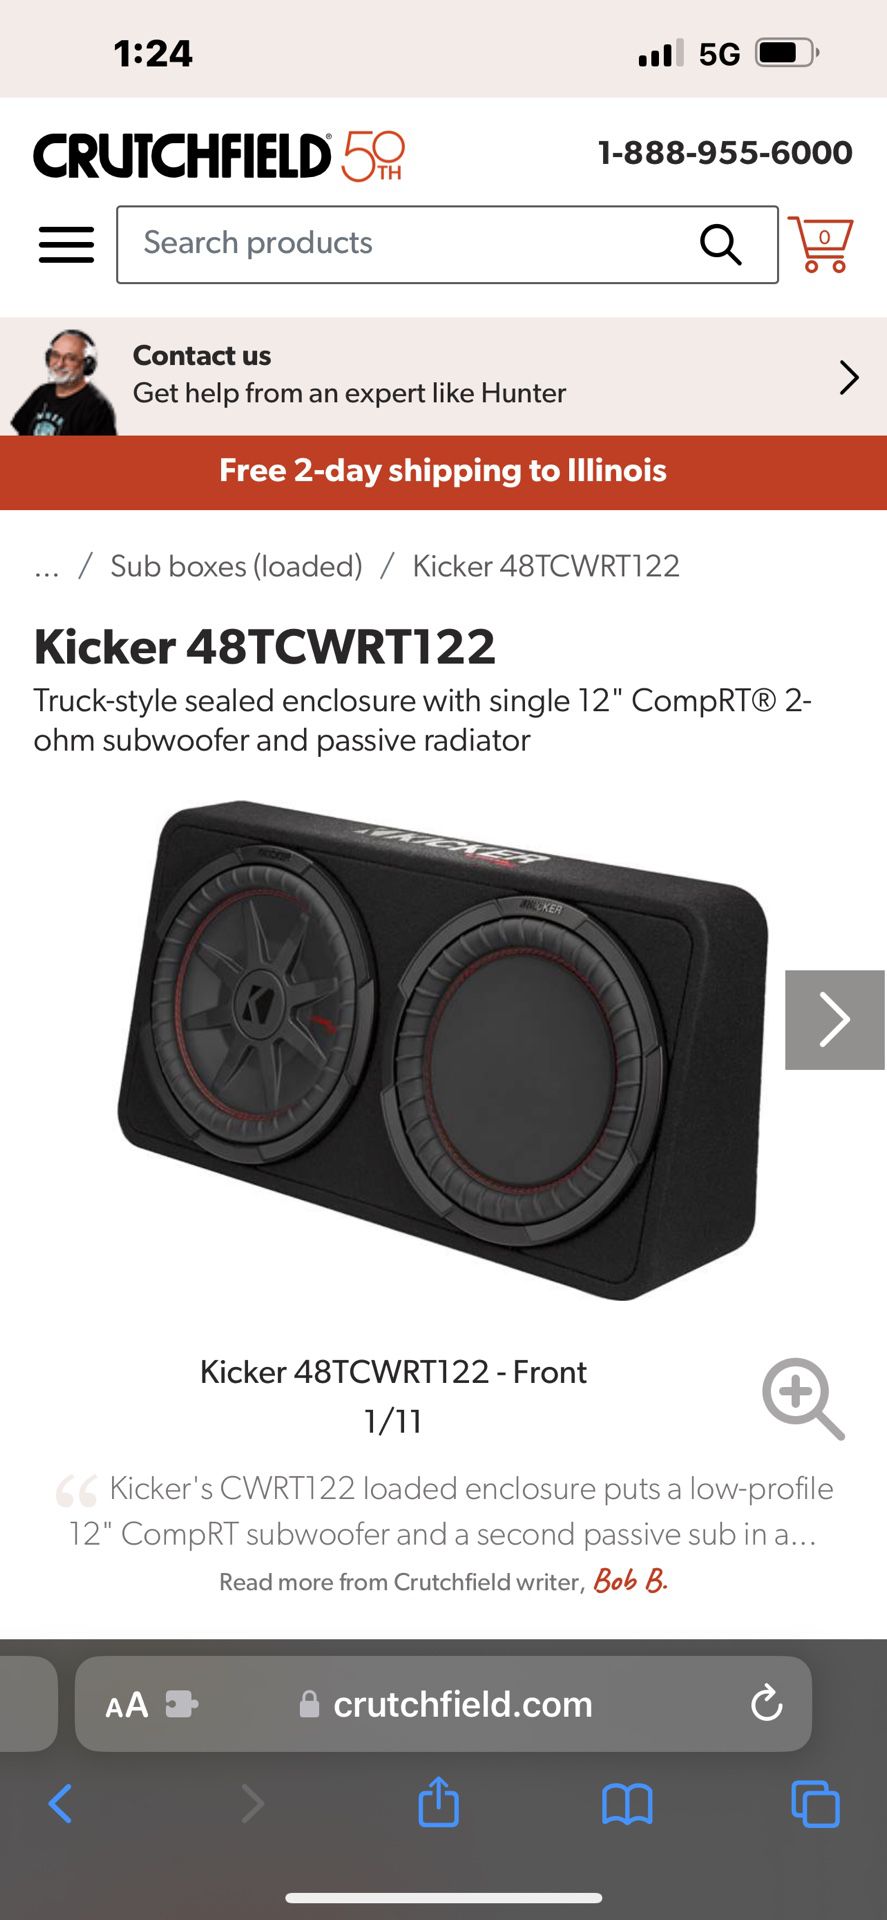 Kicker 48TCWRT122